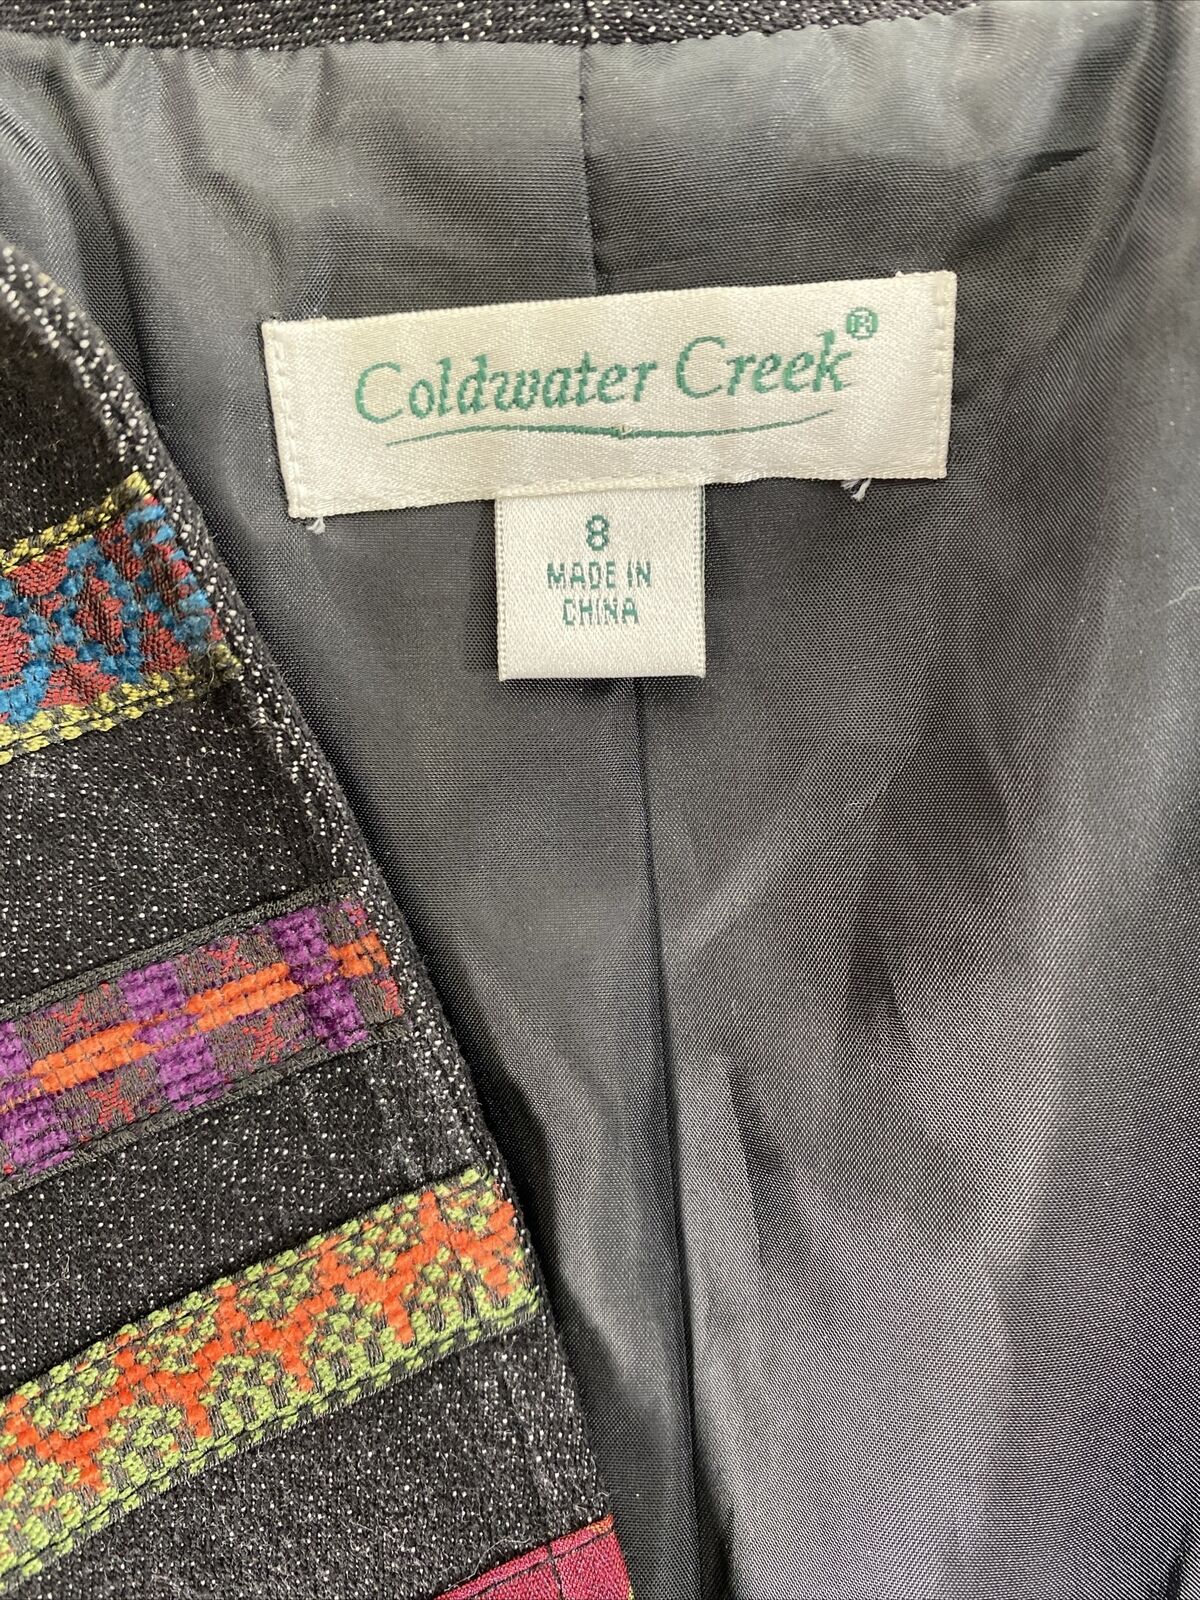 Coldwater Creek Chaqueta a rayas con cuentas multicolor para mujer - 8